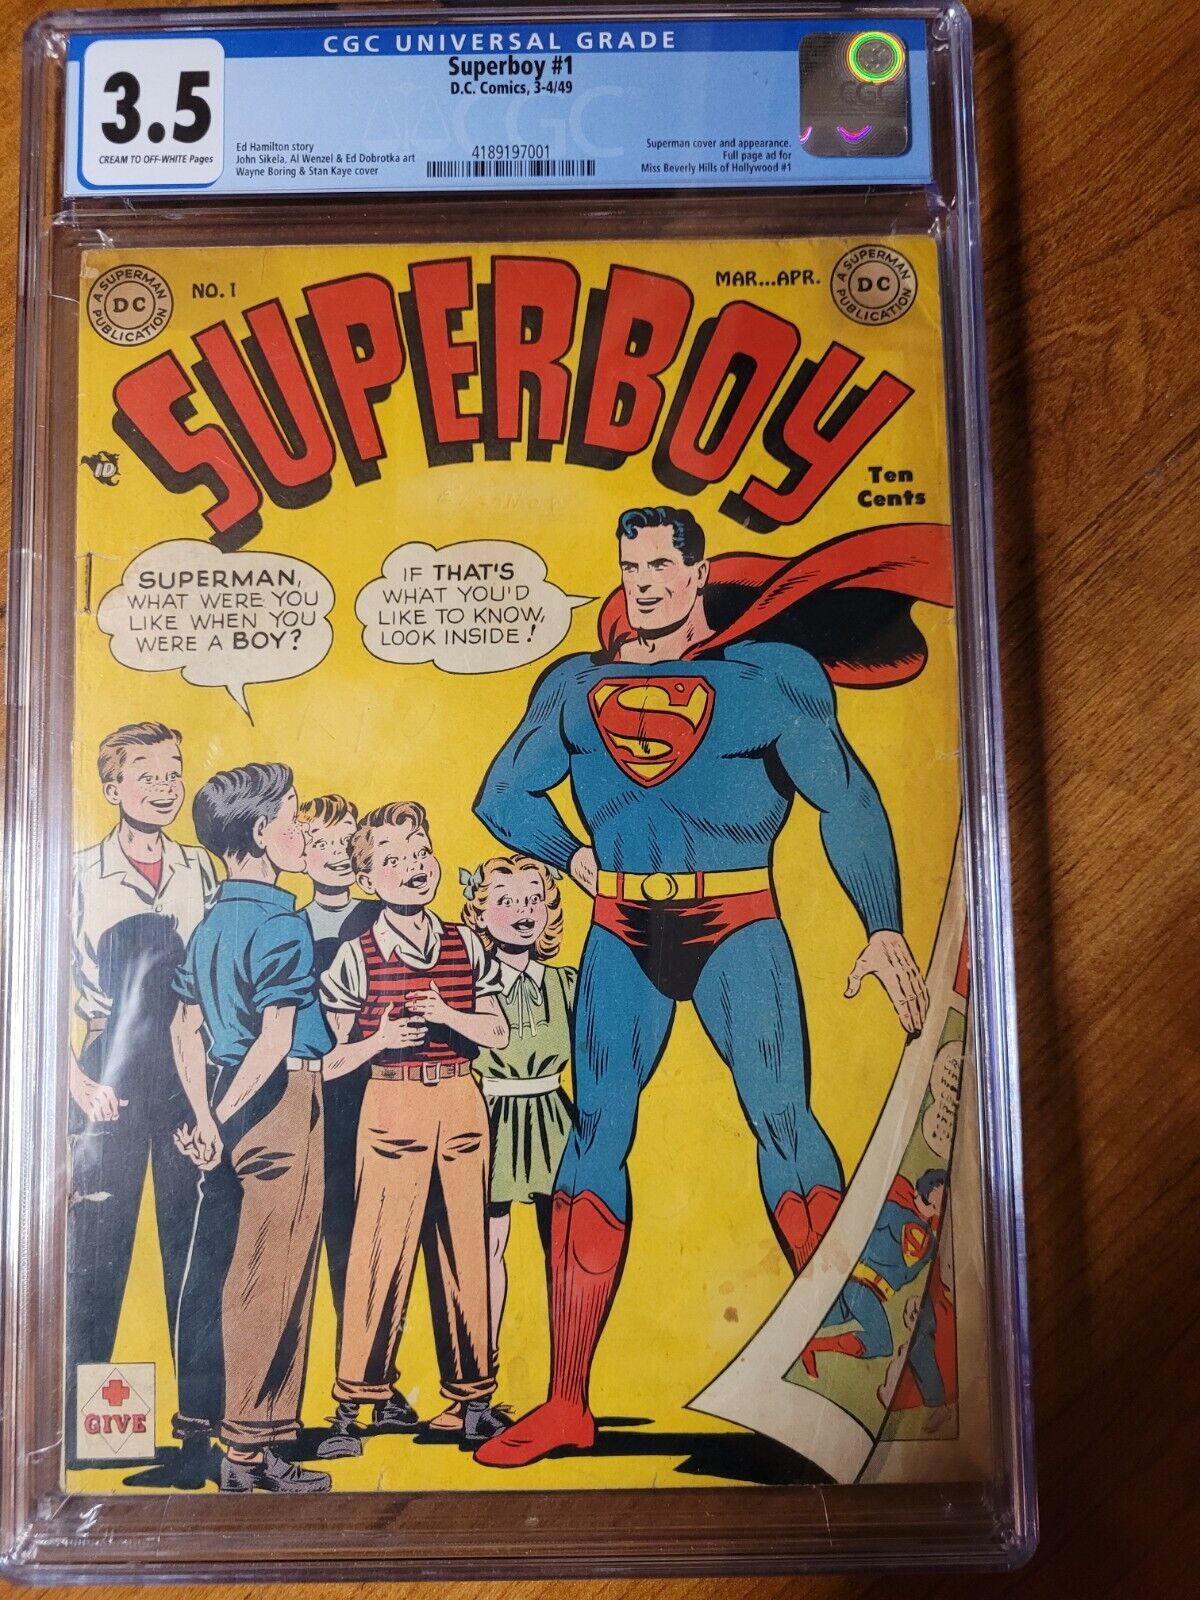 Superboy #1 1949 CGC 3.5 